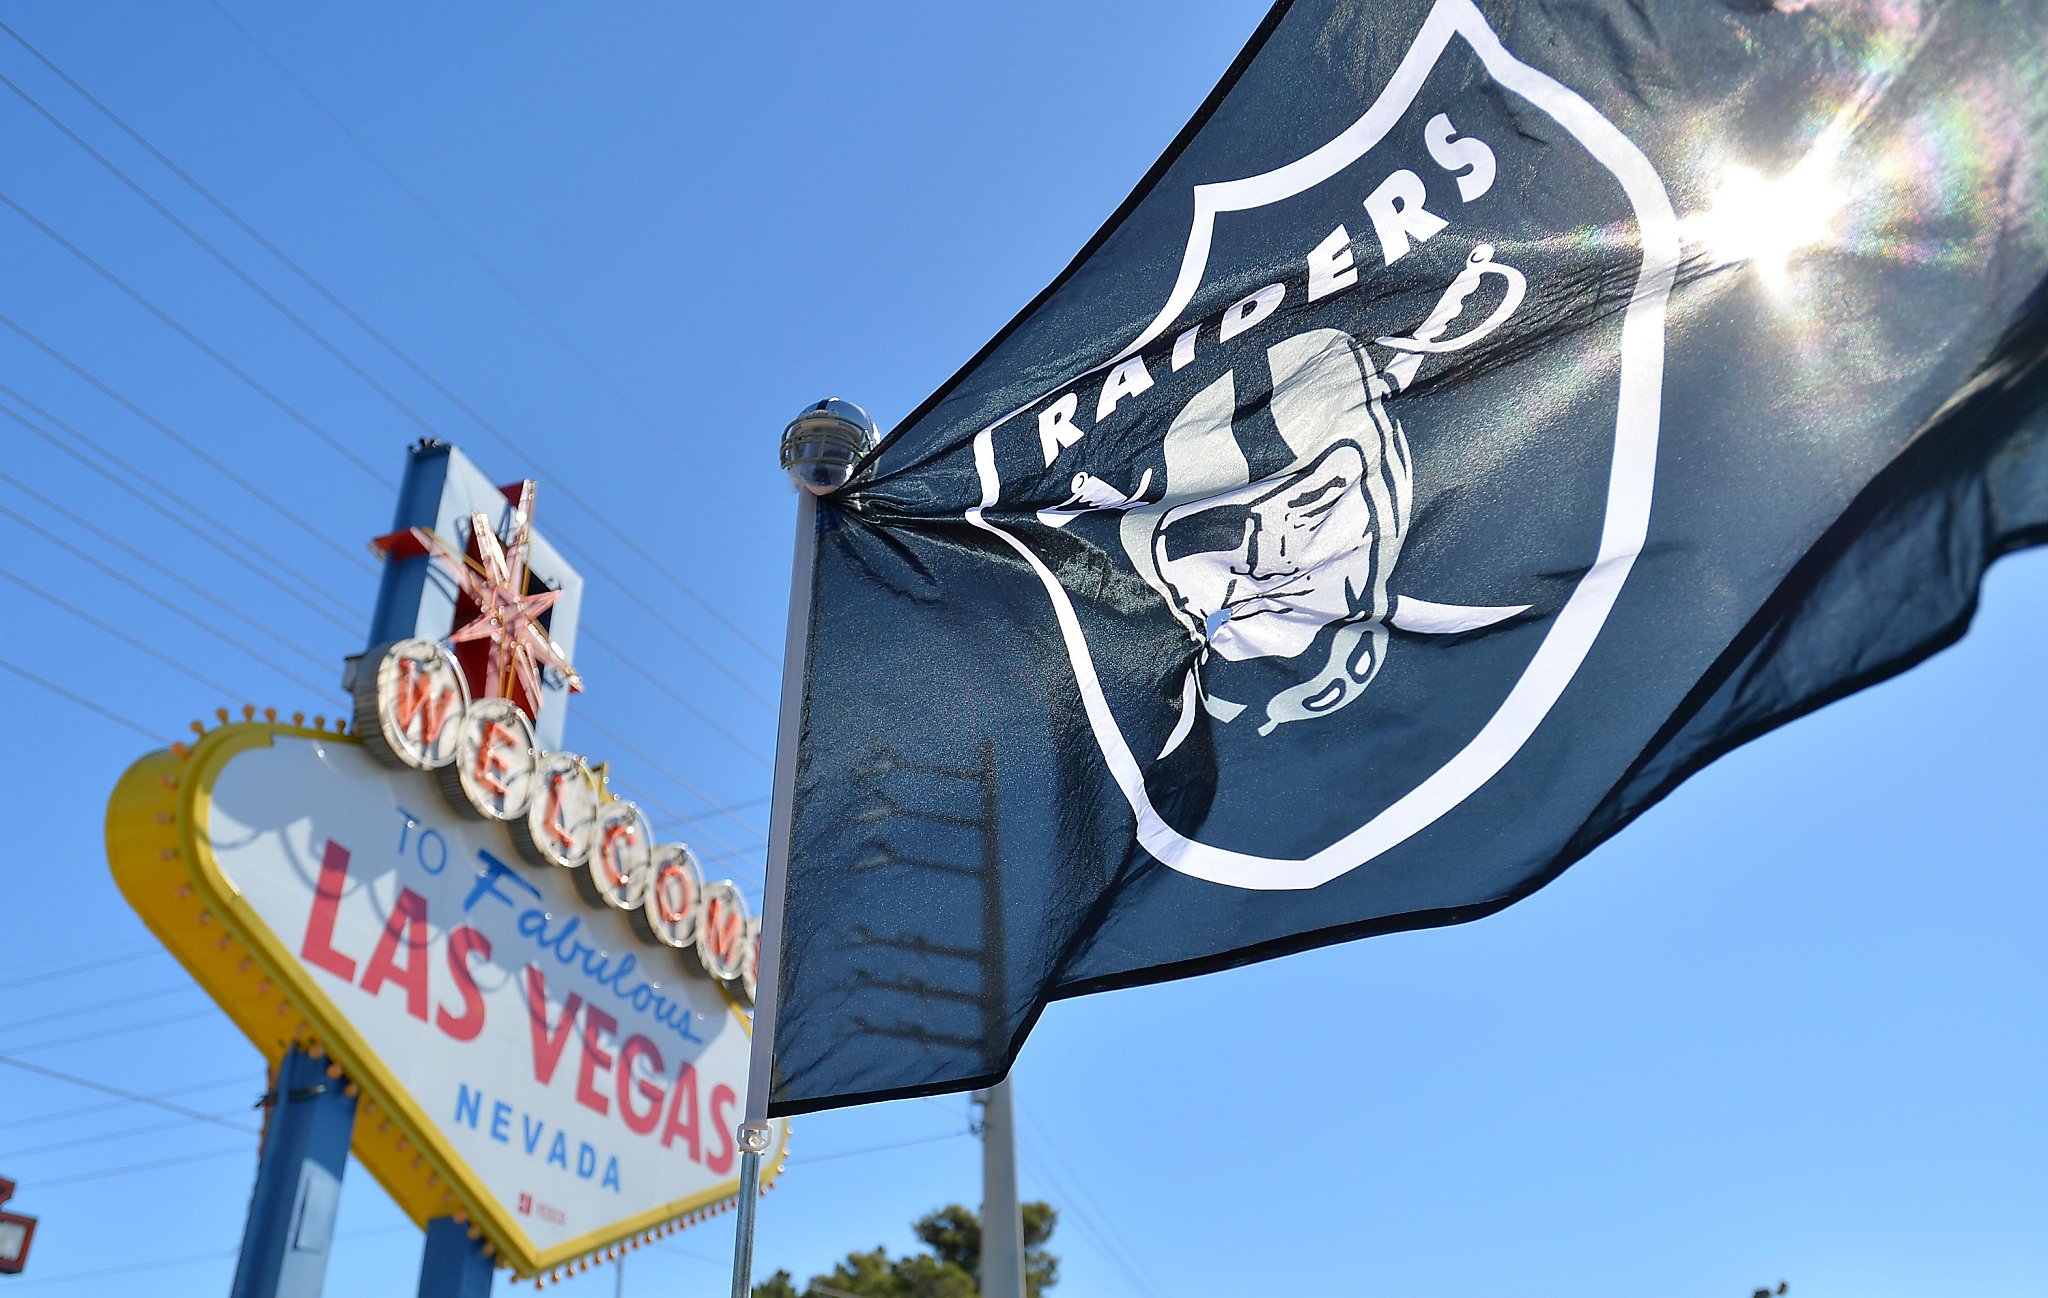 Las Vegas Raiders NFL Womens Big Logo Shimmer Slide